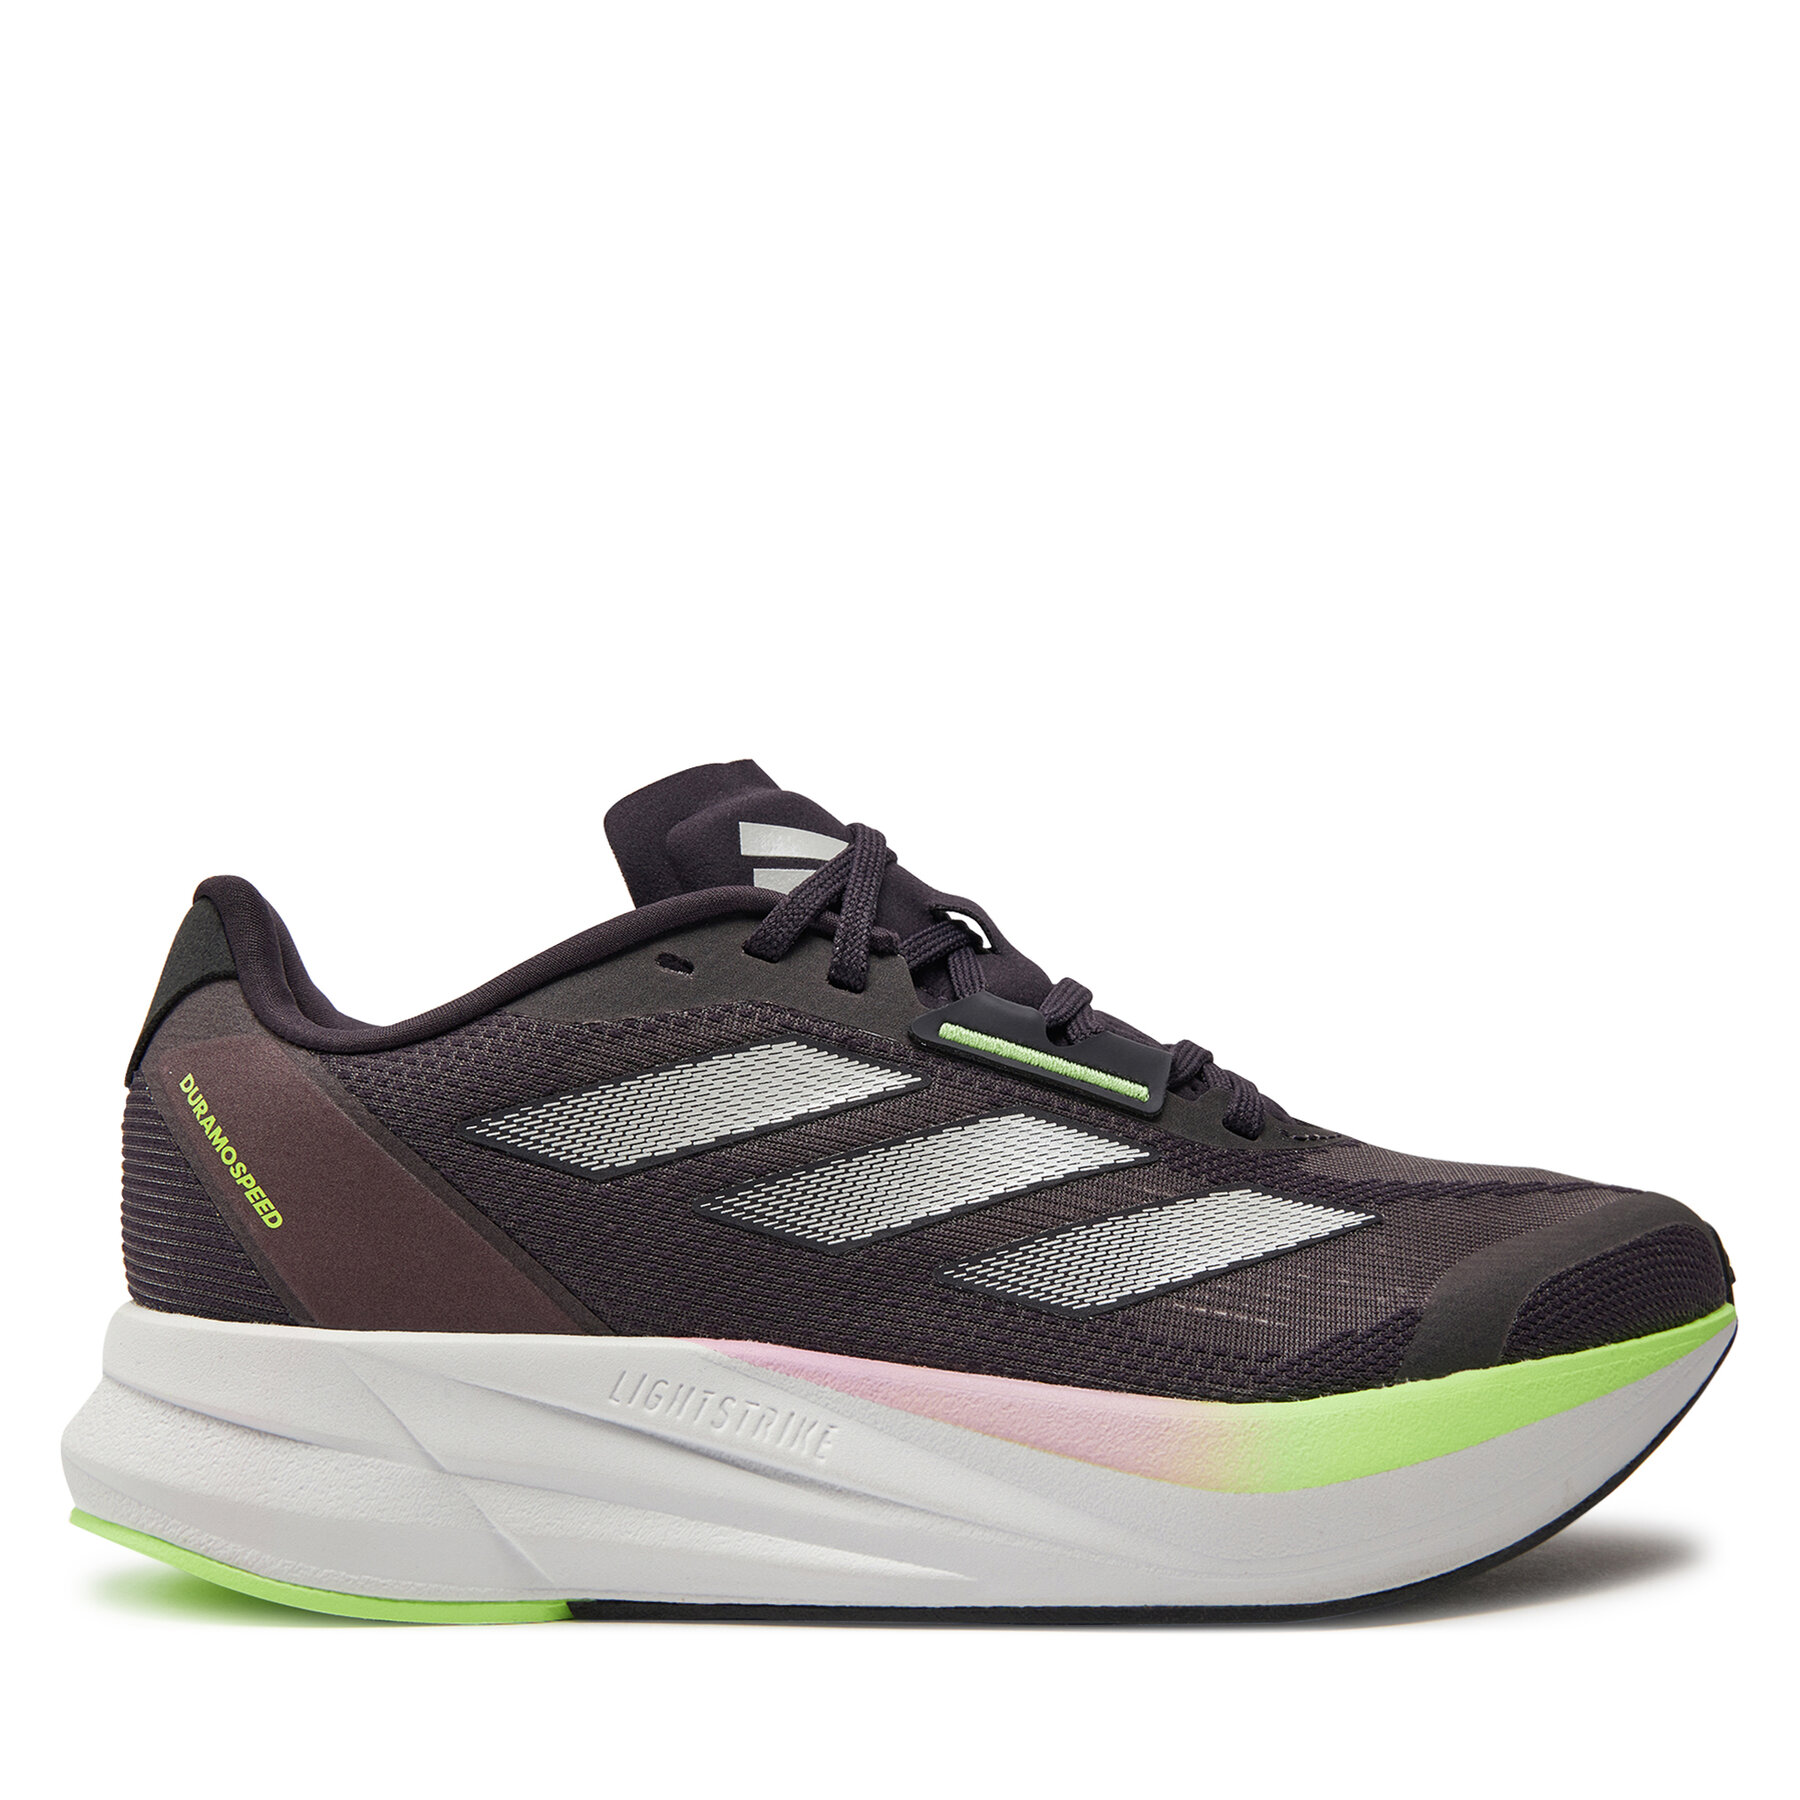 Schuhe adidas Duramo Speed IE7985 Aurbla/Zeromt/Cblack von Adidas